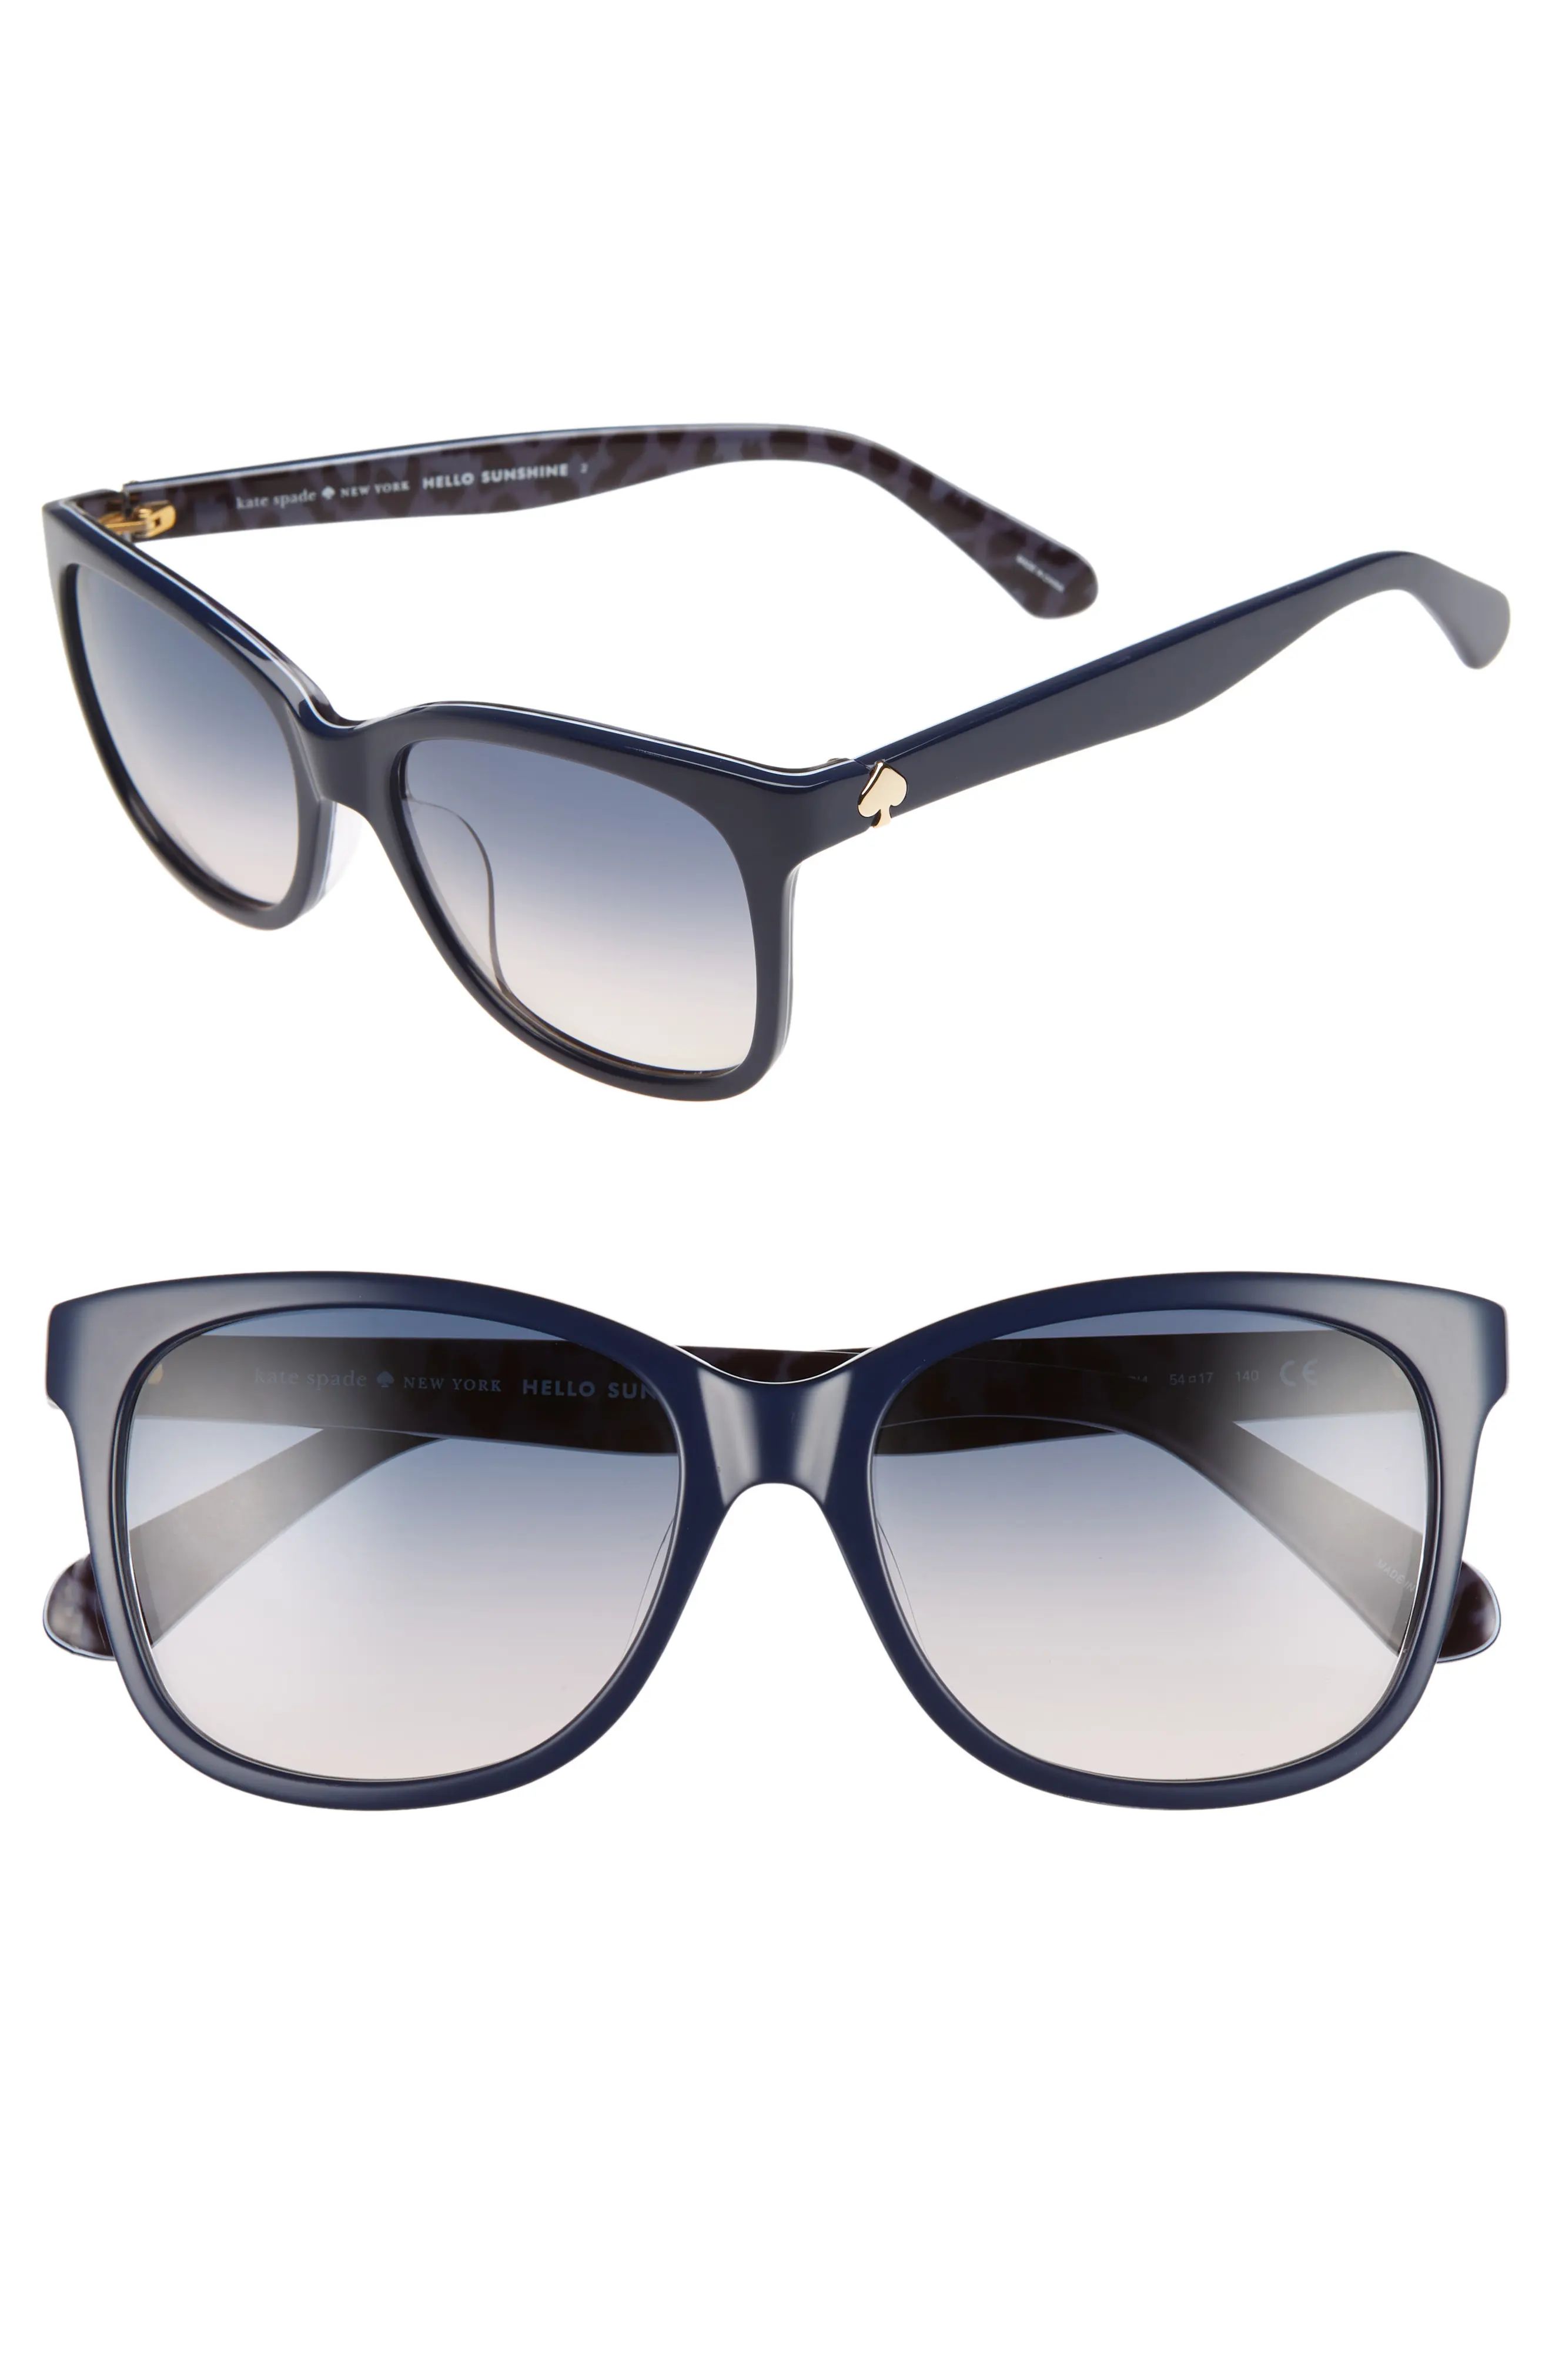 kate spade new york danalyns 54mm sunglasses | Nordstrom